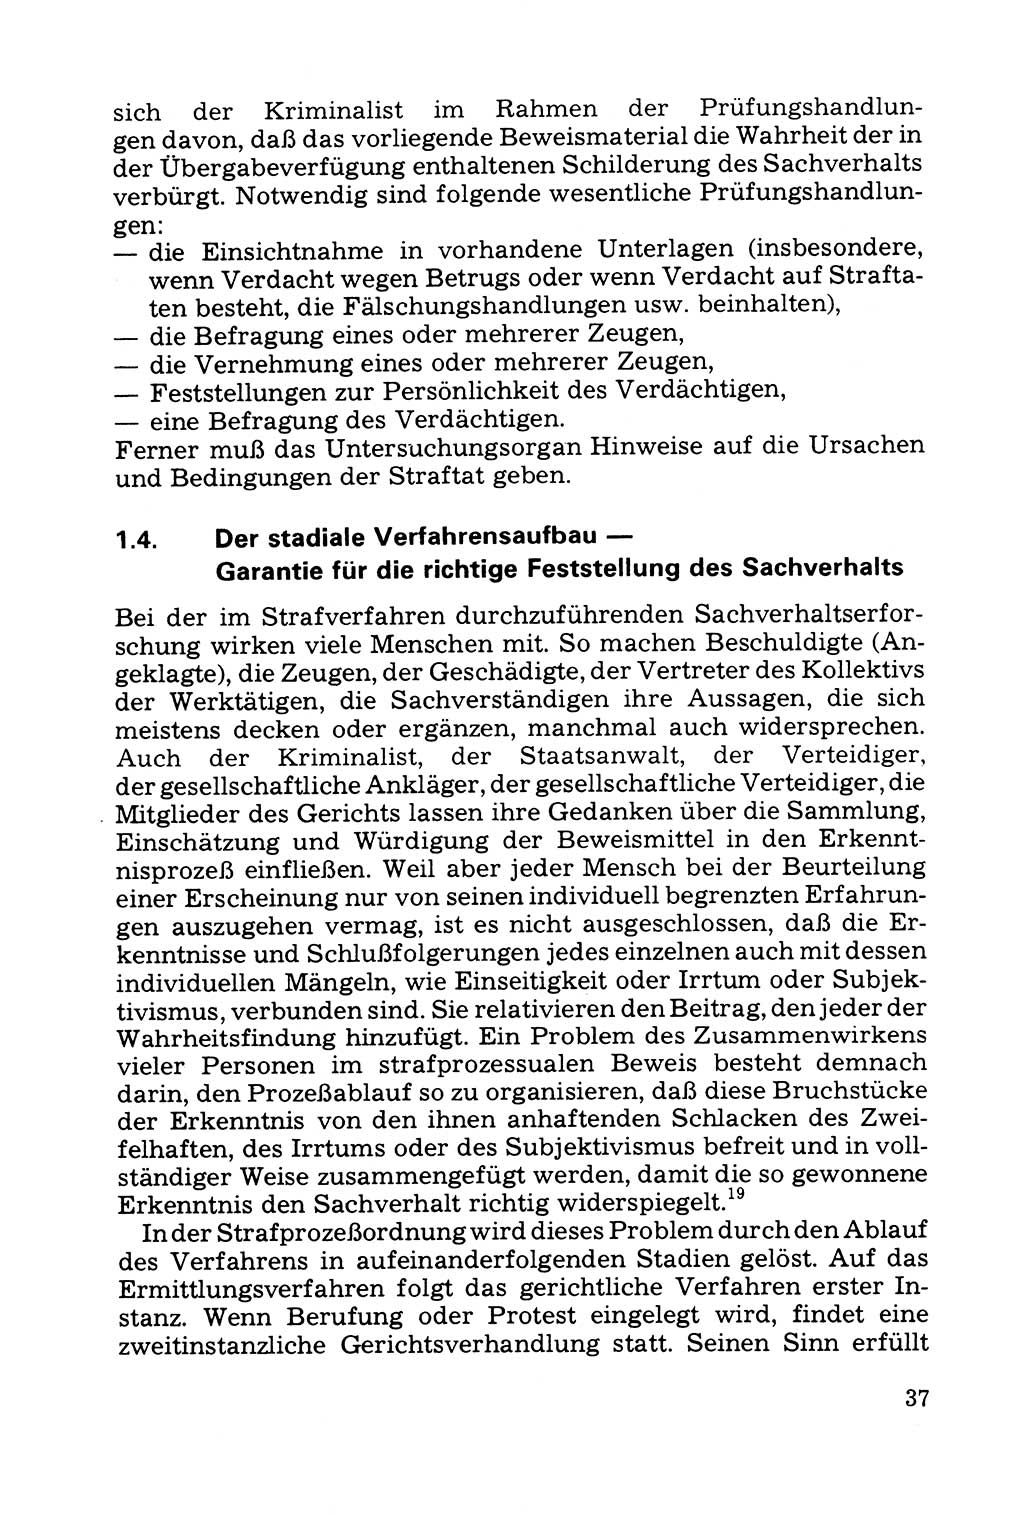 Grundfragen der Beweisführung im Ermittlungsverfahren [Deutsche Demokratische Republik (DDR)] 1980, Seite 37 (Bws.-Fhrg. EV DDR 1980, S. 37)